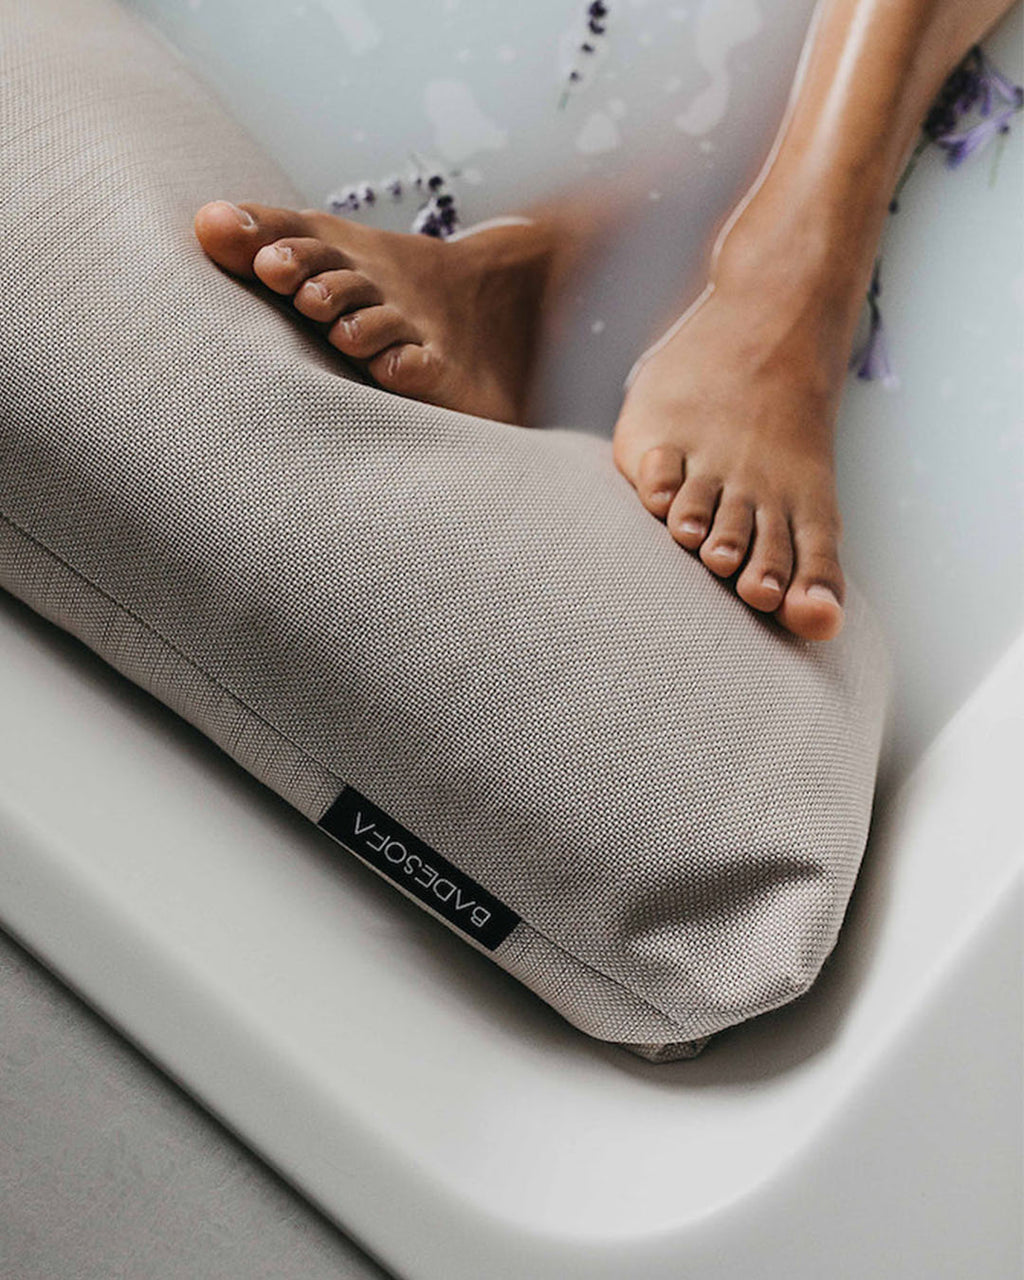 Bath Sofa - Foot bath pillow for tub - BADESOFA®